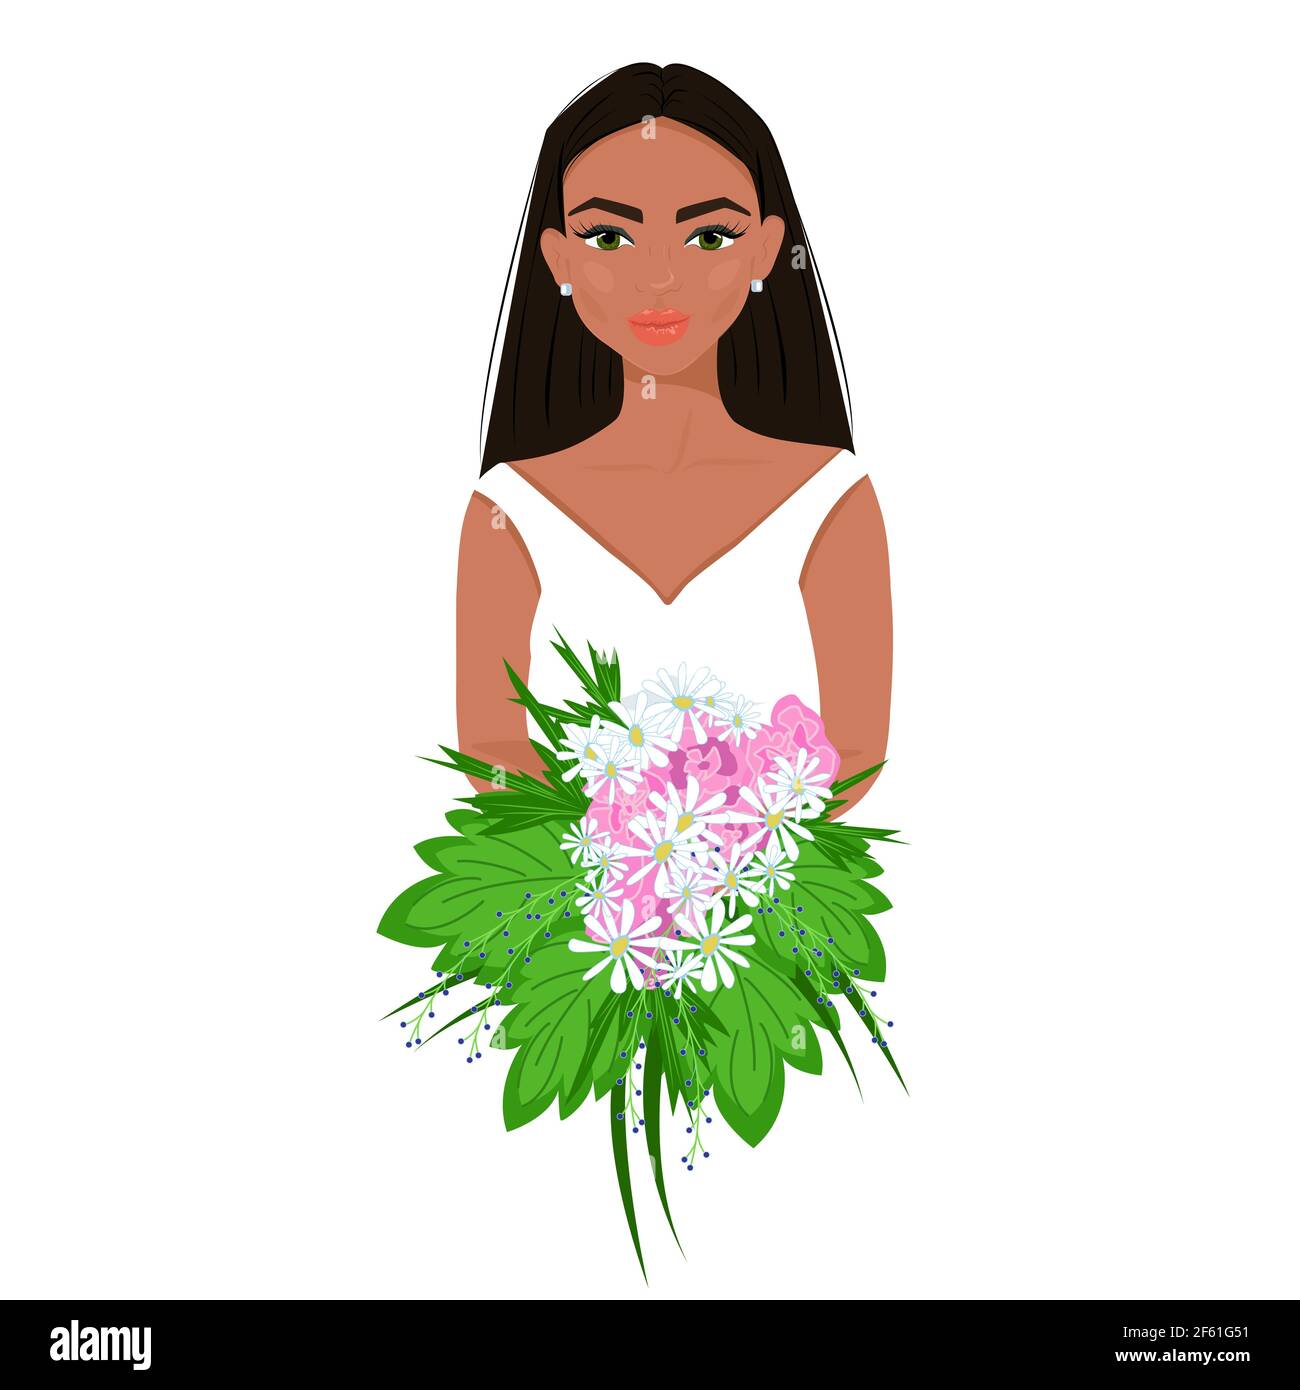 Fille en blanc avec un bouquet de fleurs dans ses mains, jolie femme afro avec maquillage, belle avatar femelle, illustration vectorielle de style plat. Illustration de Vecteur